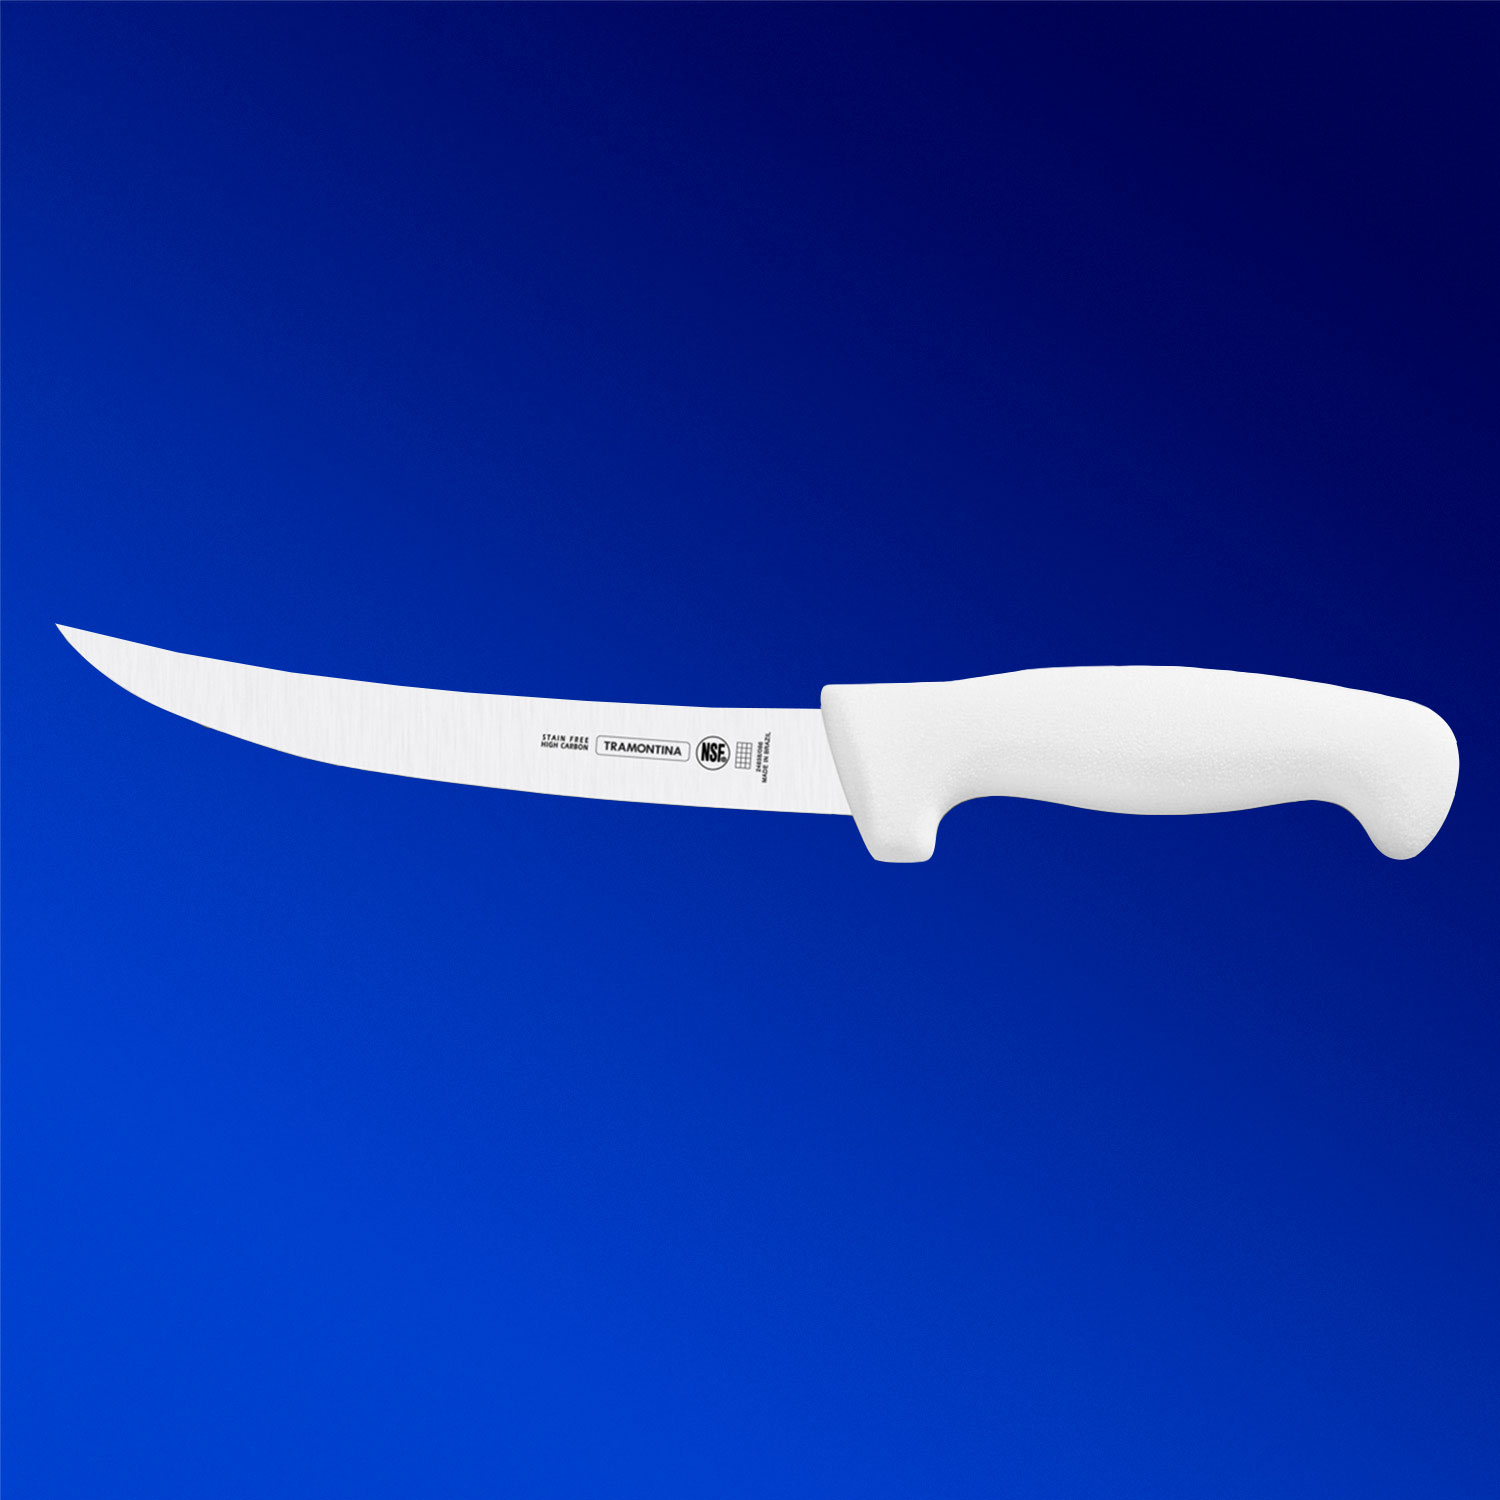 Нож Professional Master 152мм/294мм белый